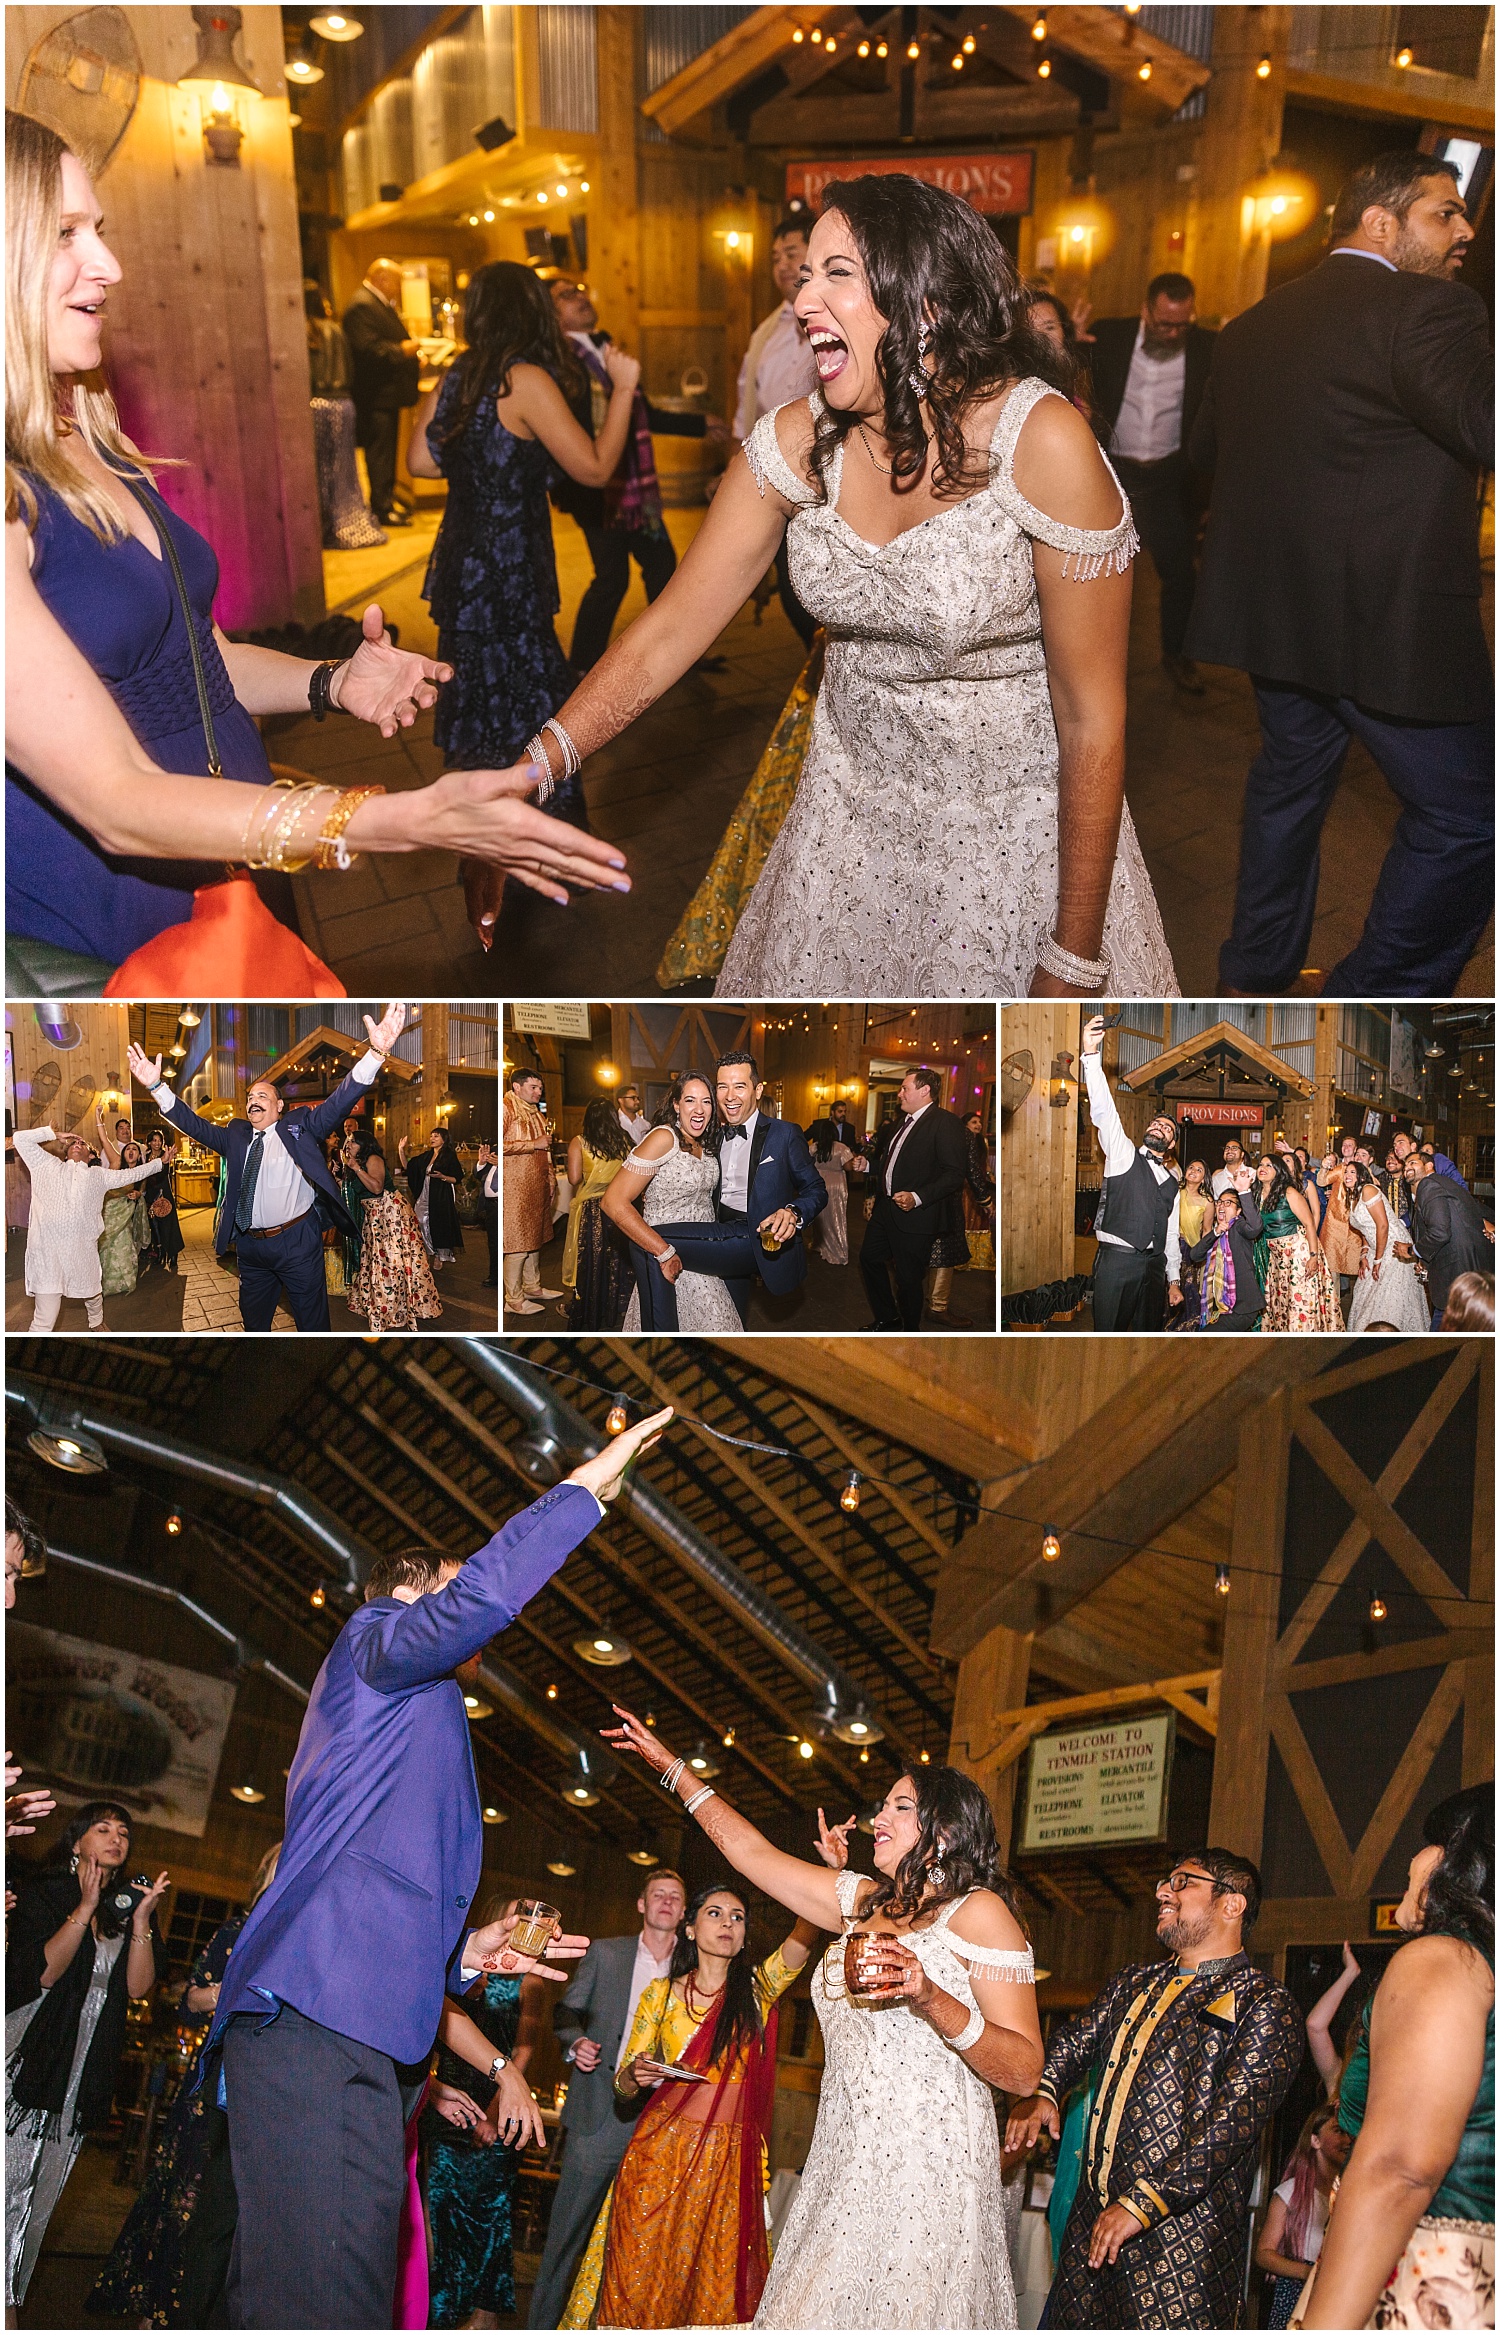 Ten Mile Station wedding reception dancing in Breckenridge Colorado